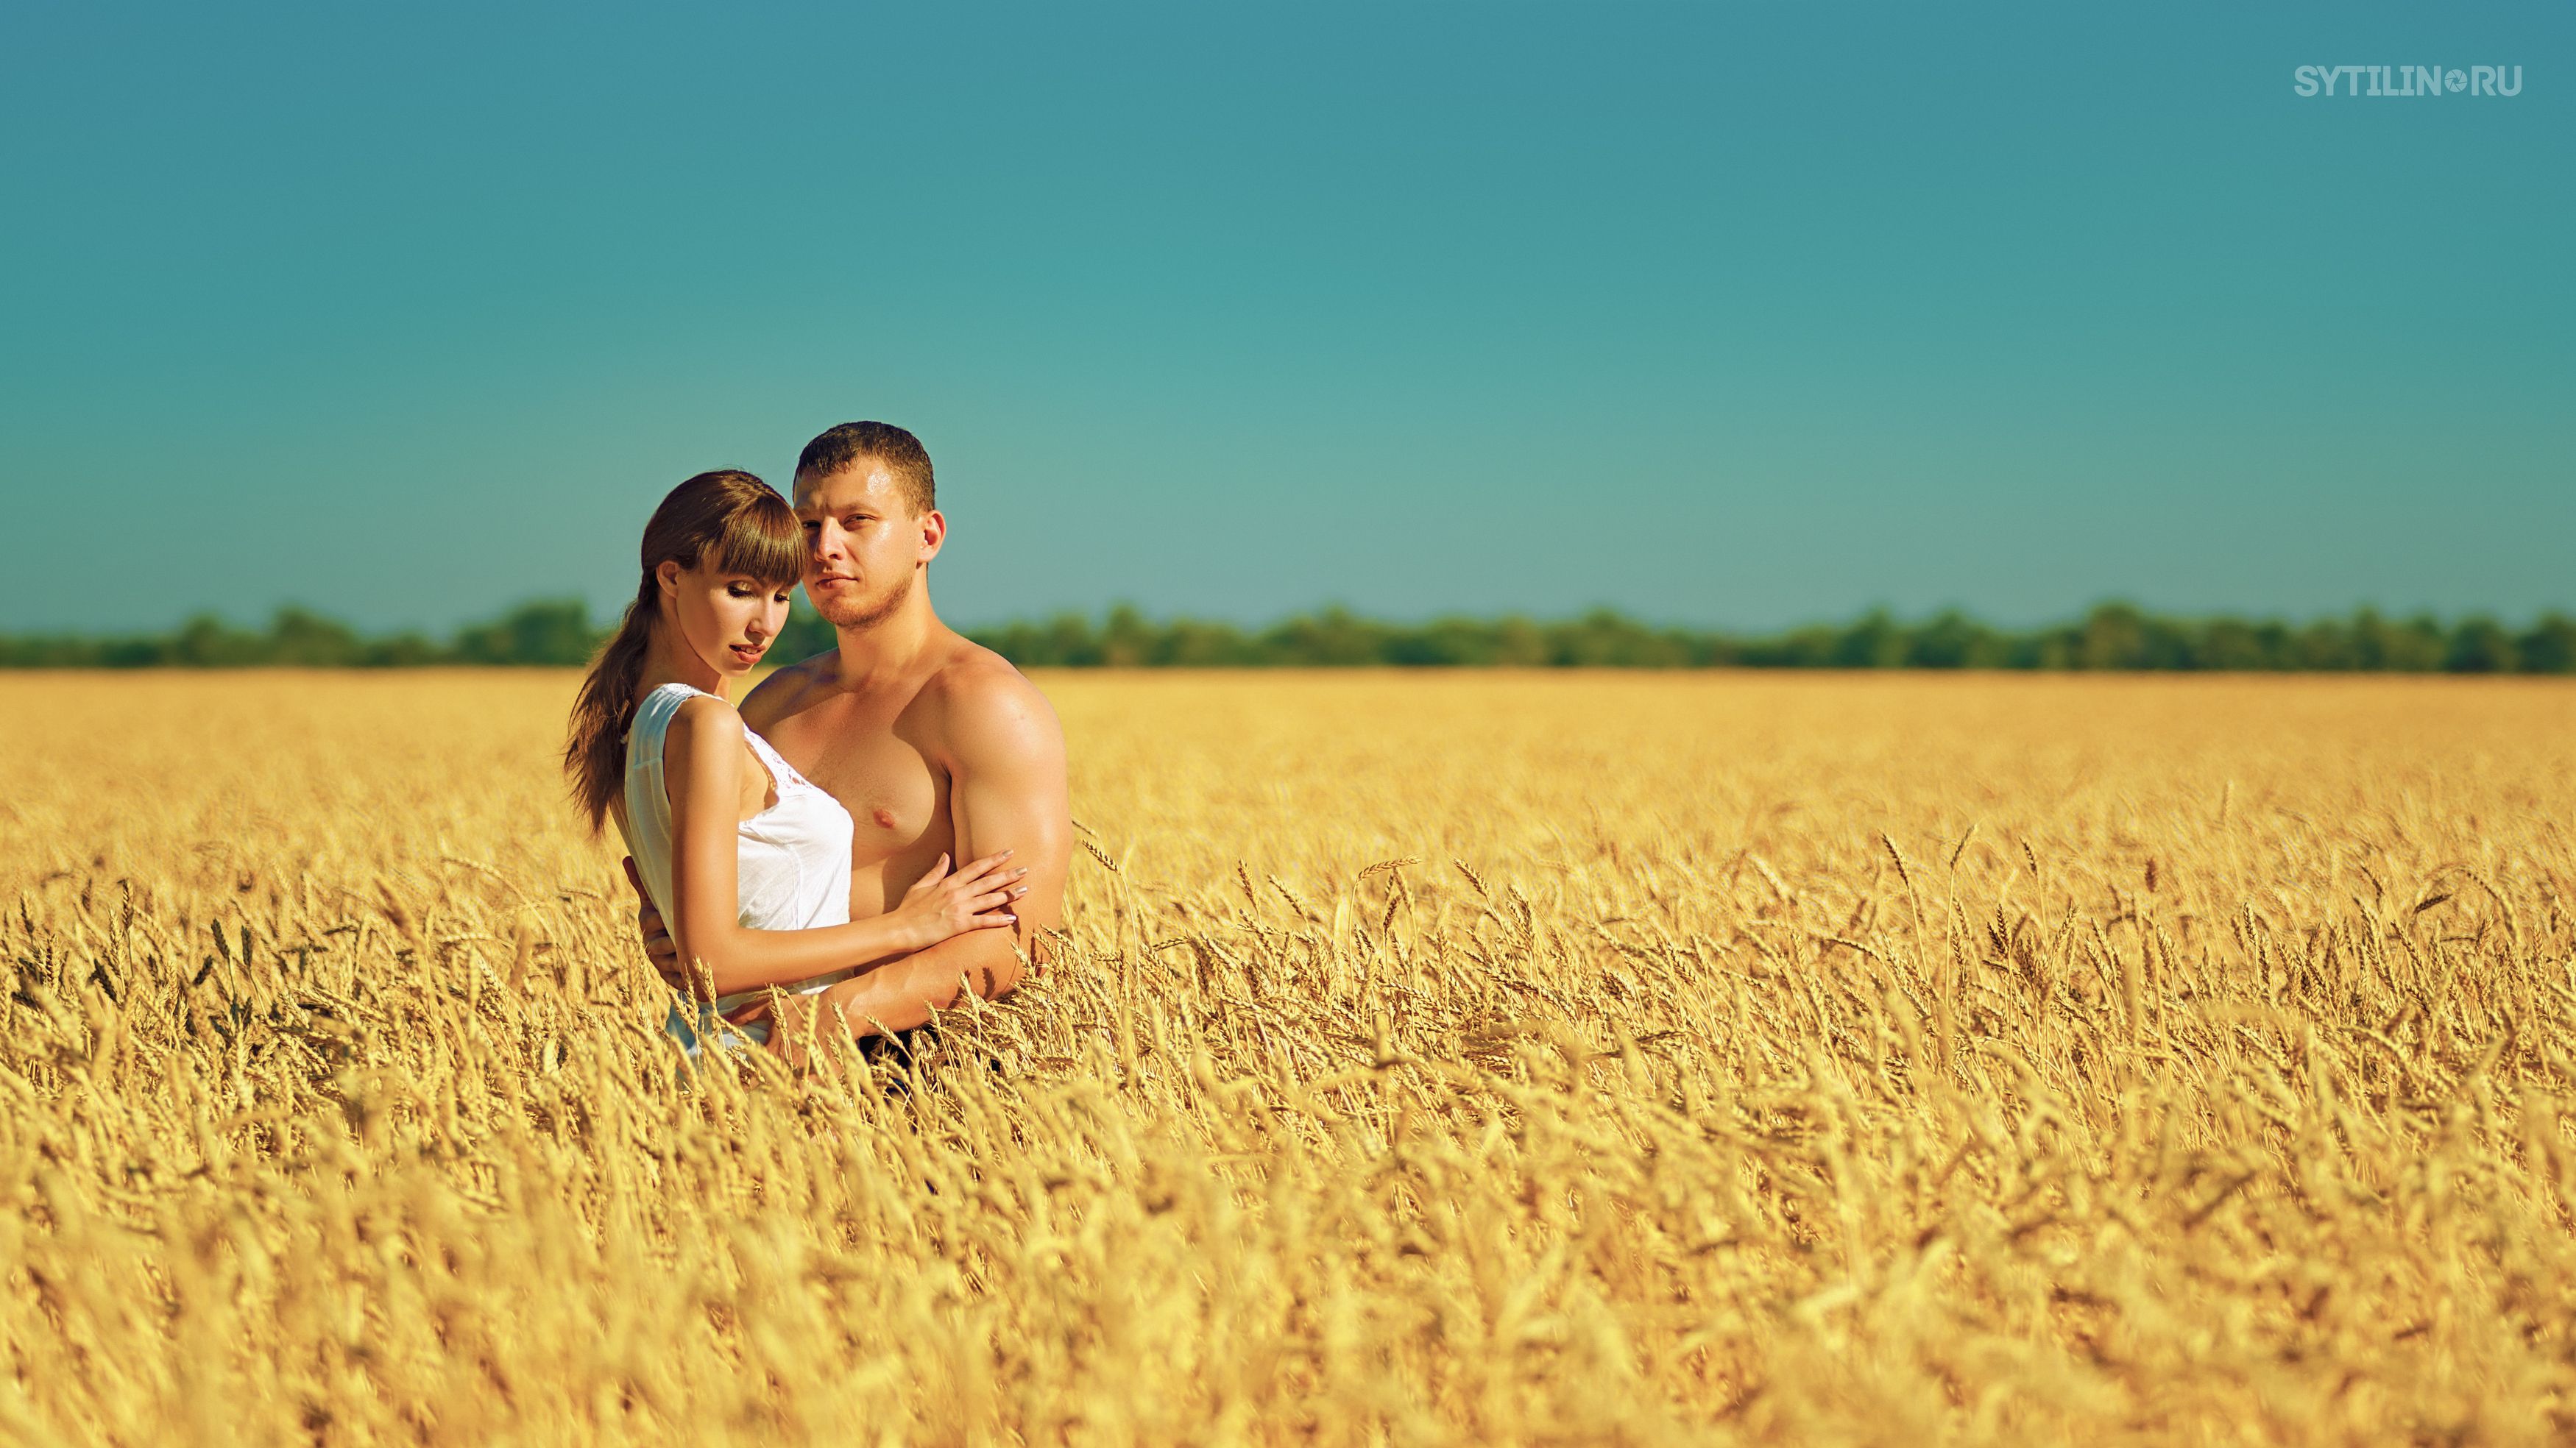 поле, пара, двое, пшеница, объятья, молодые, парень, девушка, жатва, романтичный, любовь, , Сытилин Павел